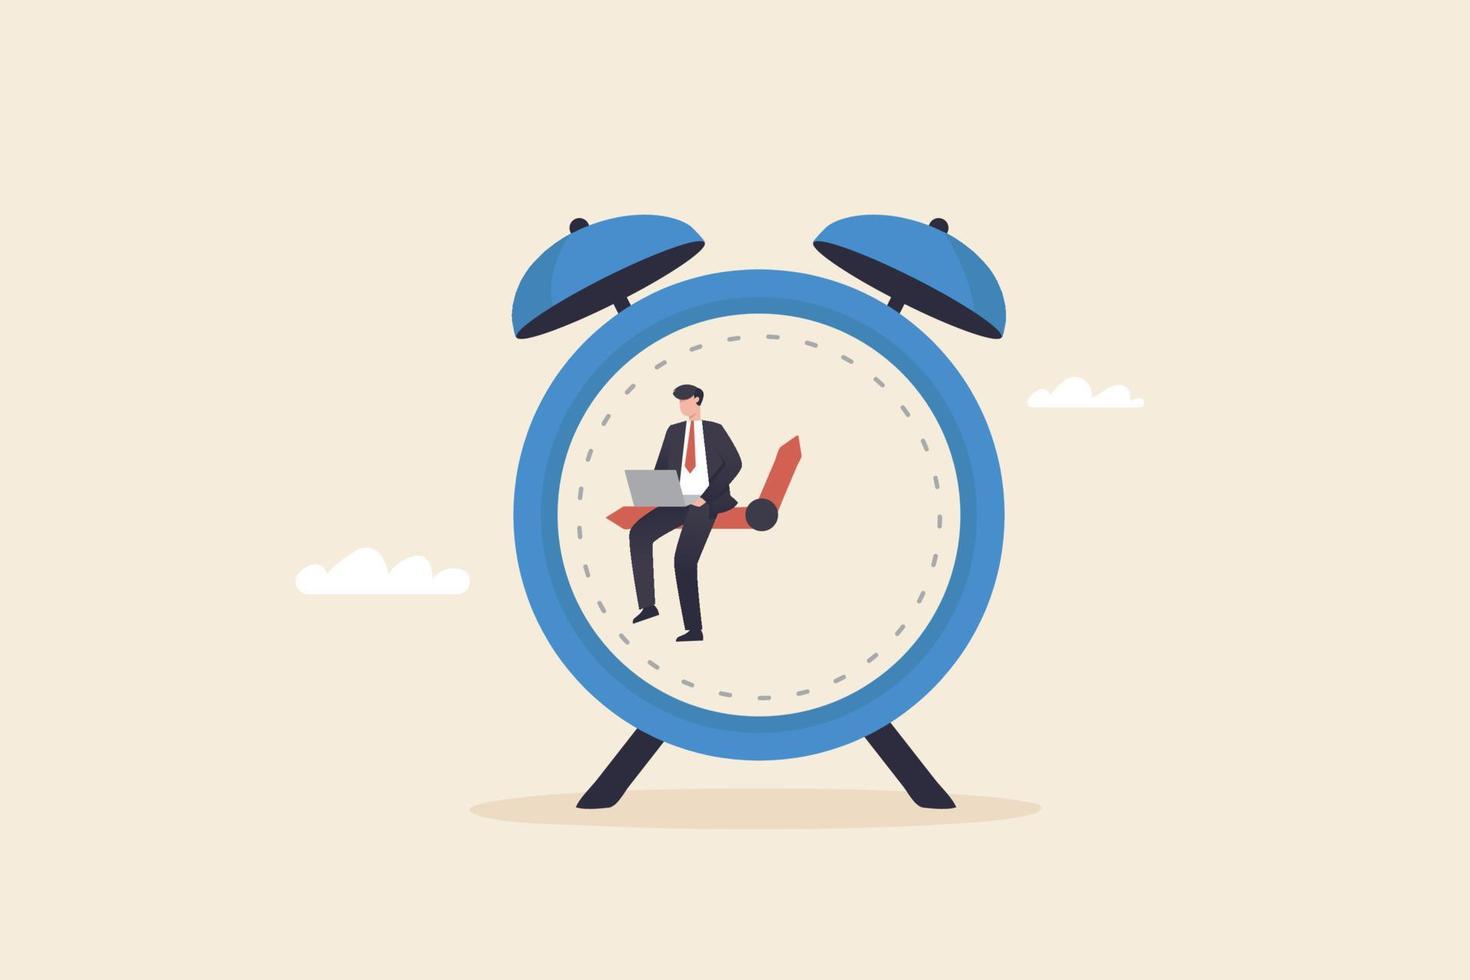 gestión del tiempo en el trabajo, horas extra, gente de negocios sentada en las manecillas del reloj tratando de asignar tiempo al trabajo para lograr objetivos. vector